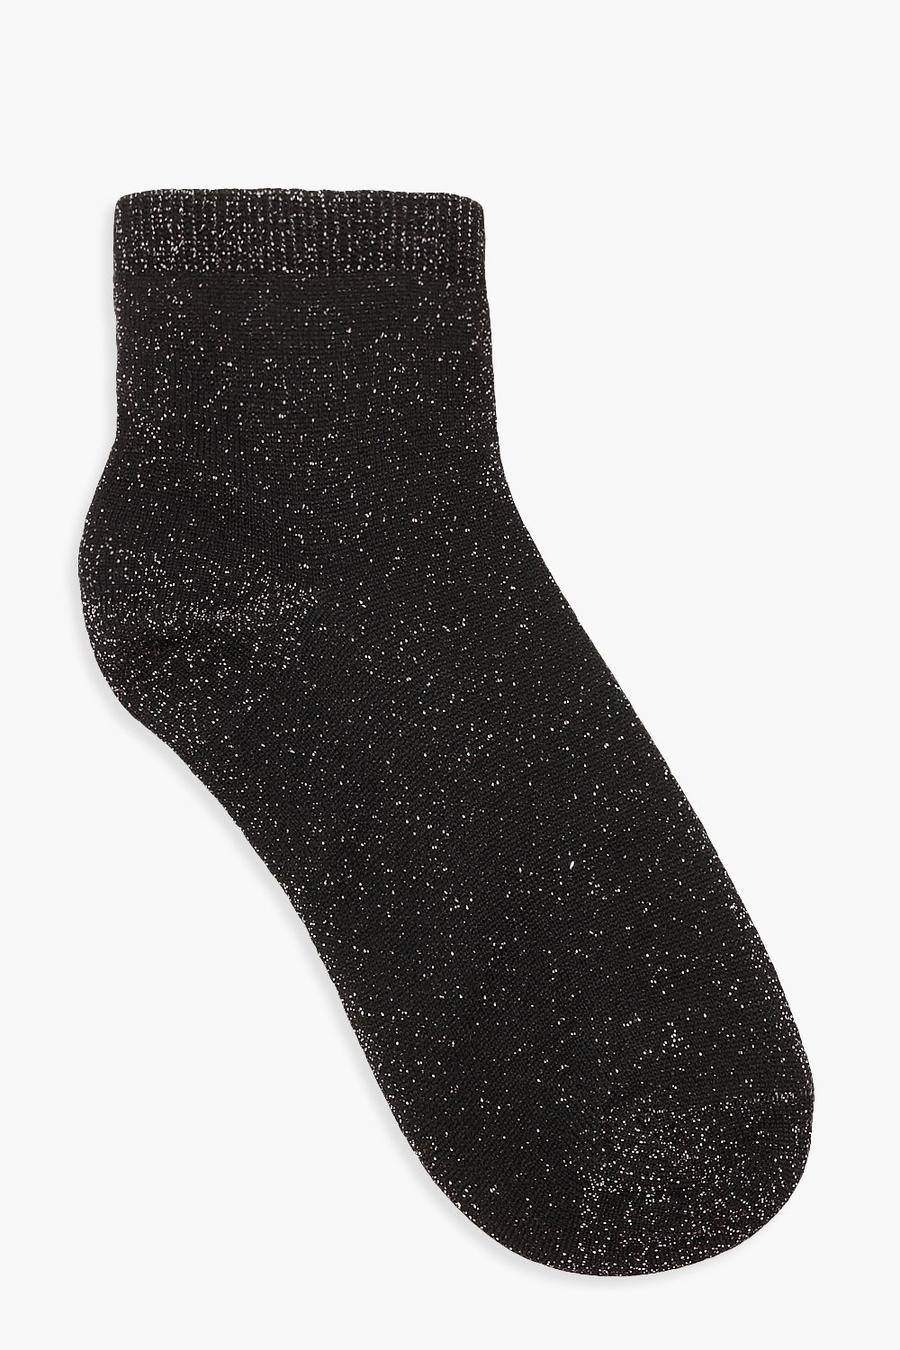 Black Glitter Ankle Socks image number 1